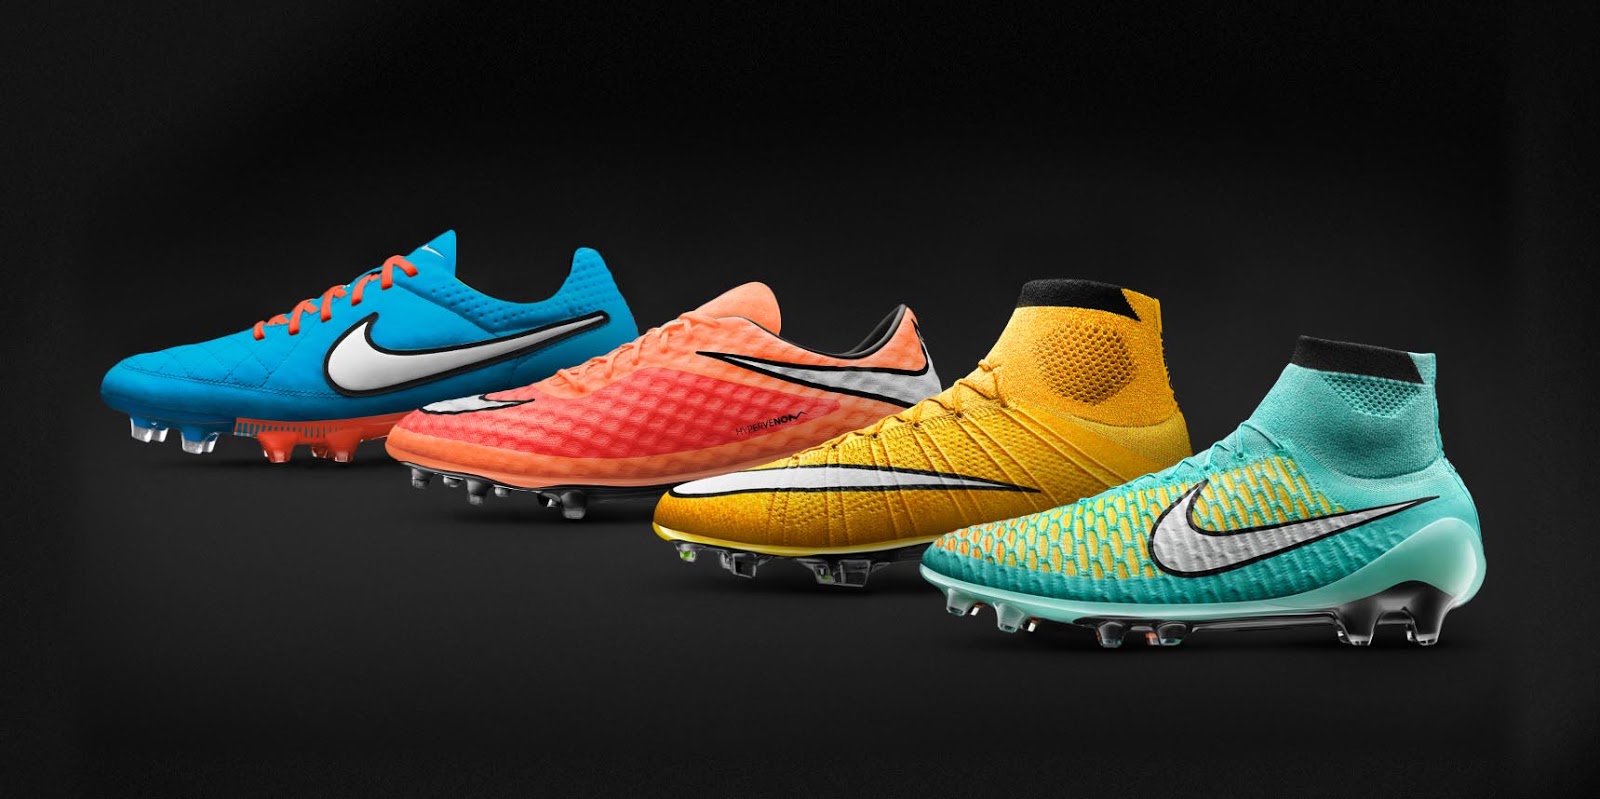 veronderstellen lekkage reactie Nike September 2014 Boot Colorways Launched - Footy Headlines